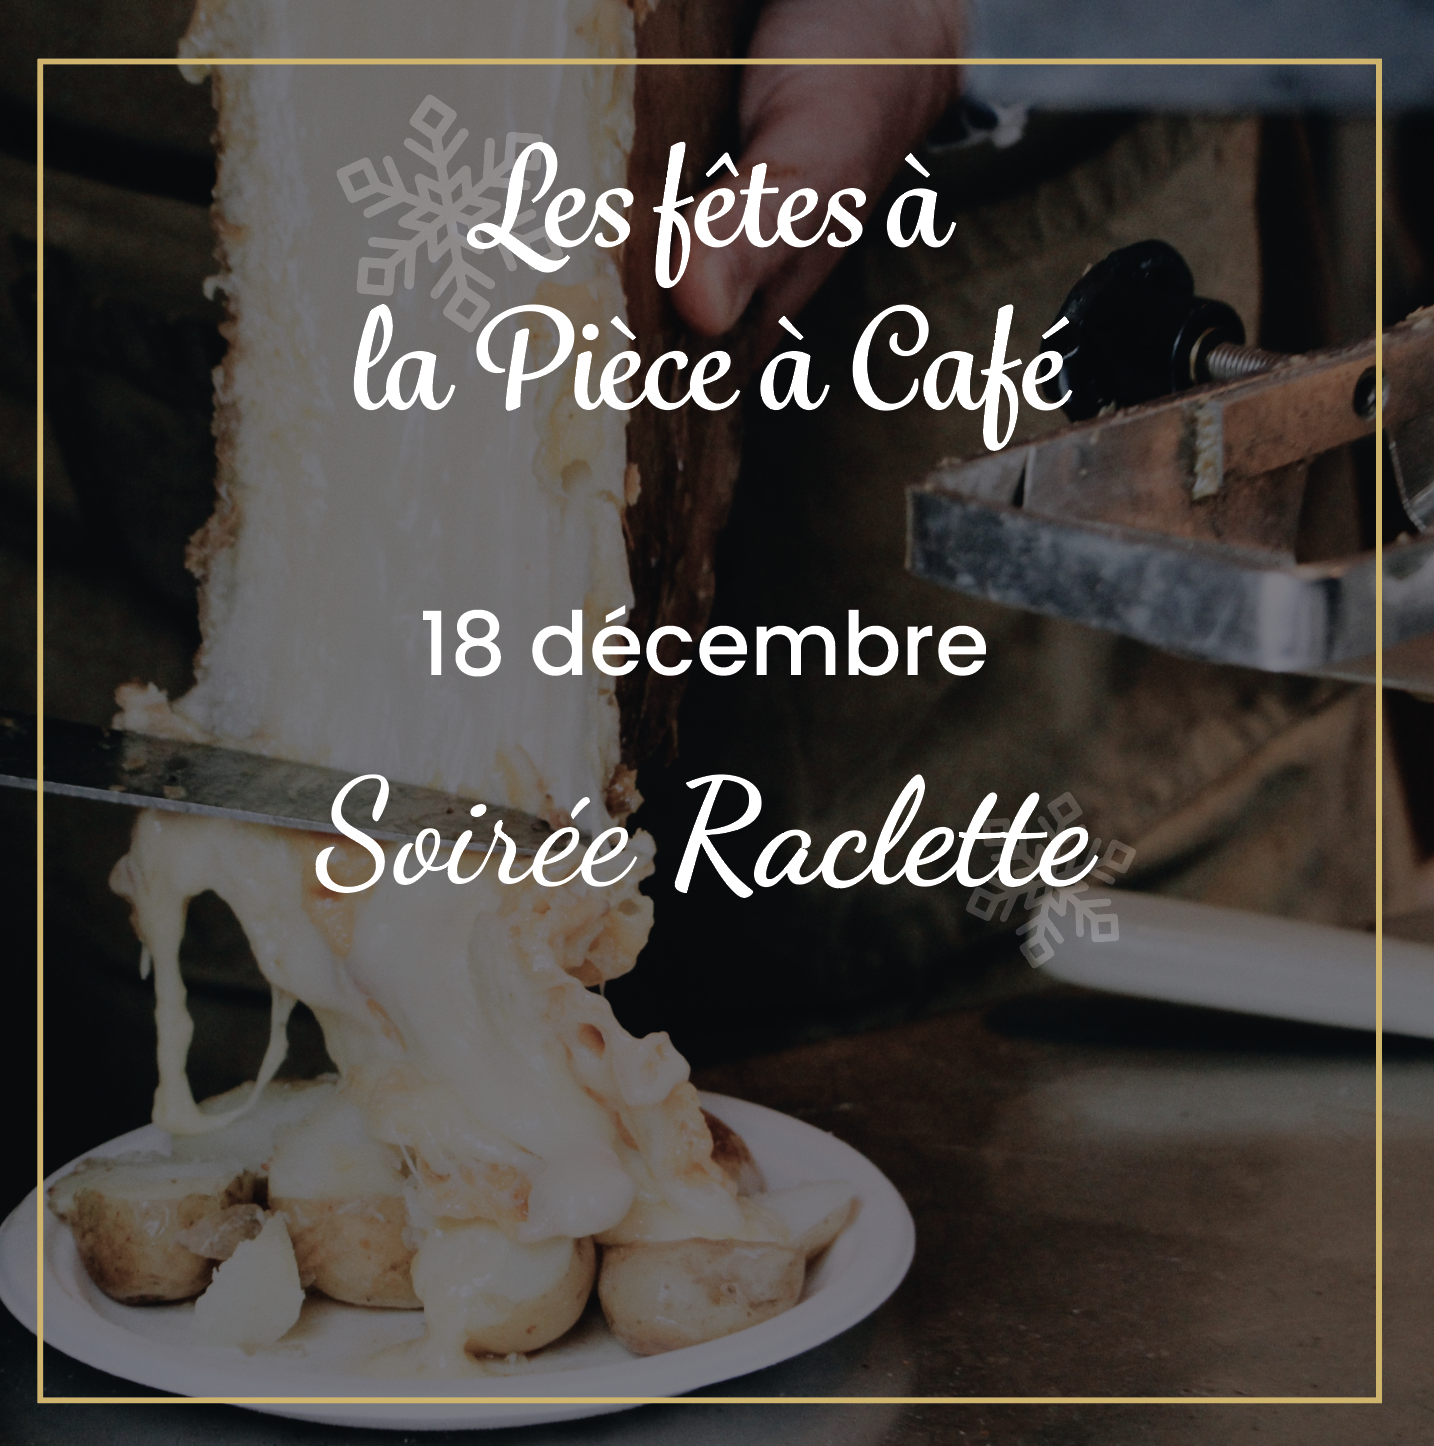 Raclette party at La Pièce à Café